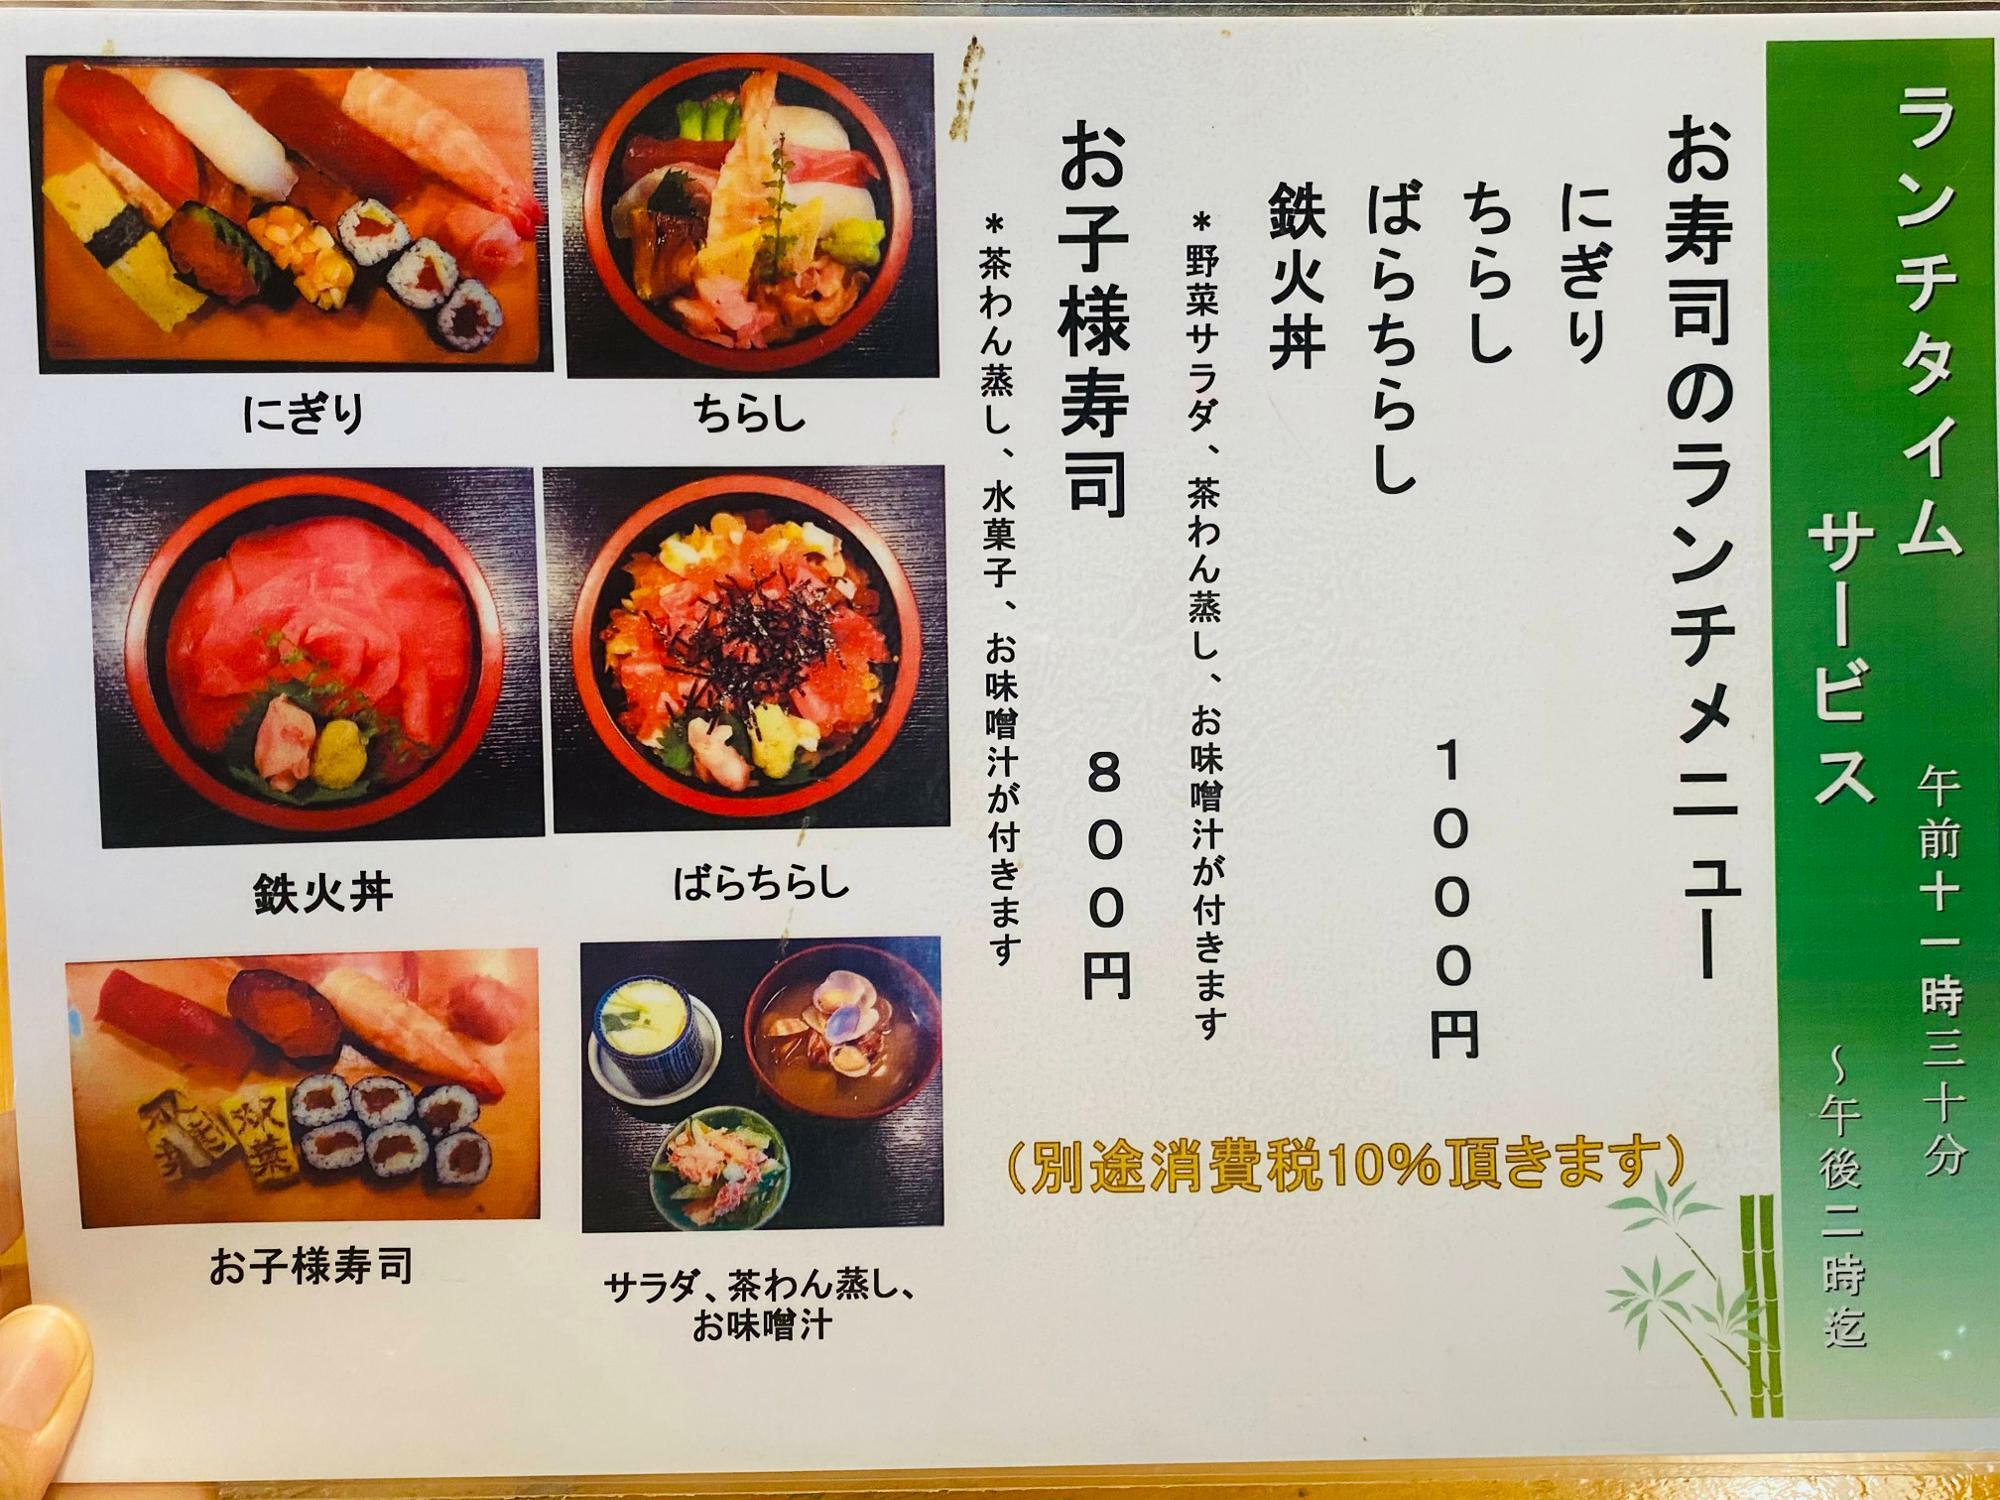 「双葉寿司」メニュー